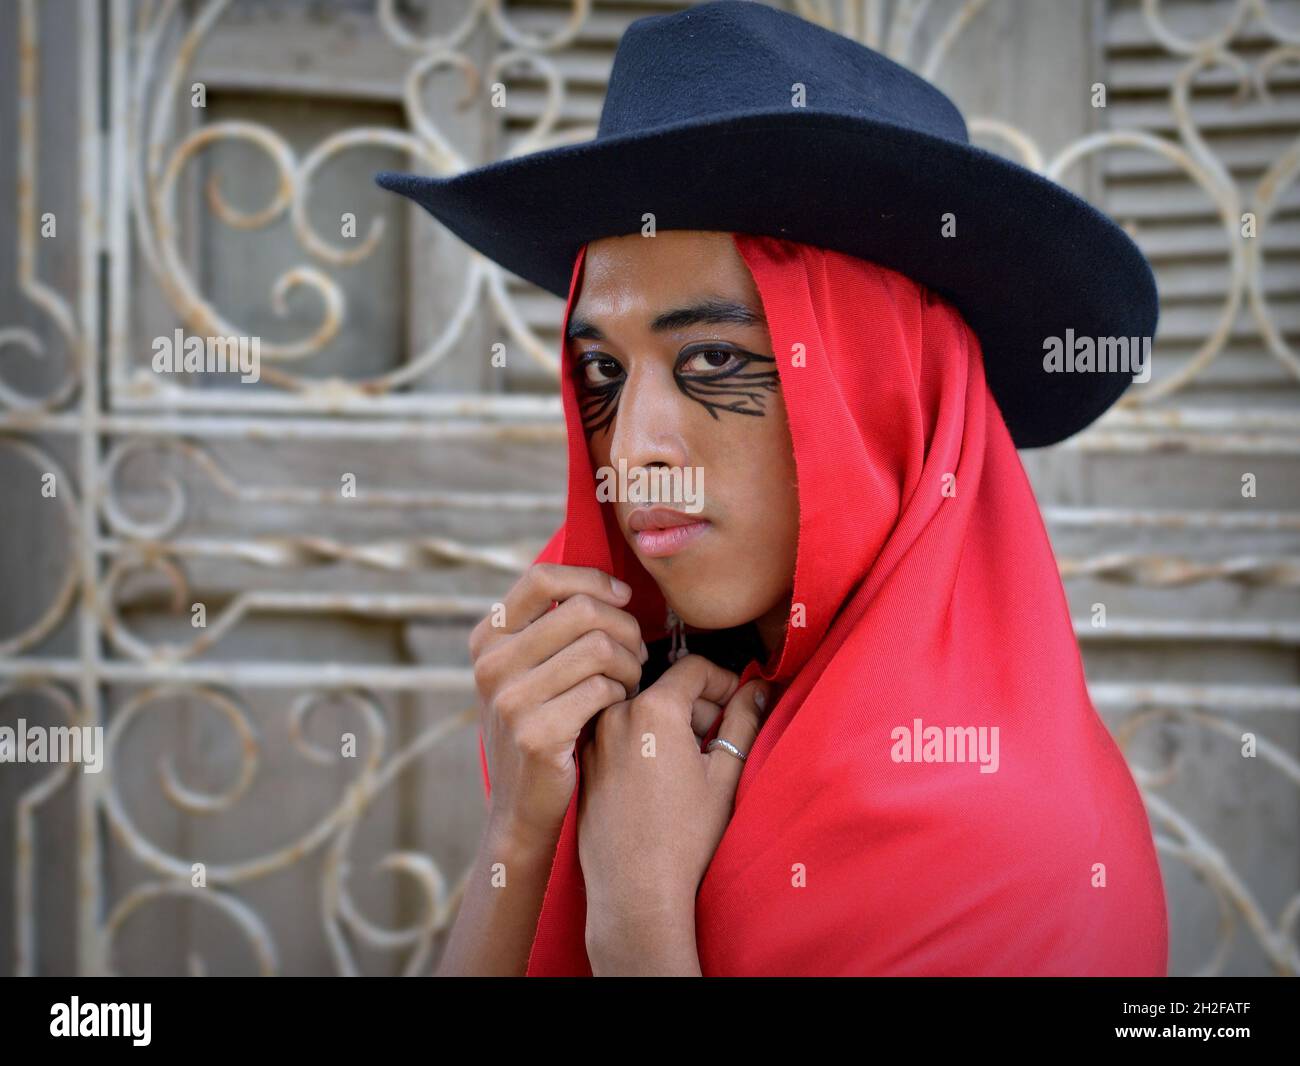 Beau jeune non binaire Latino porte un chapeau noir avec le rouge mexicain rebozo comme une cagoule et pose devant un barbecue de fenêtre en fer forgé blanc. Banque D'Images